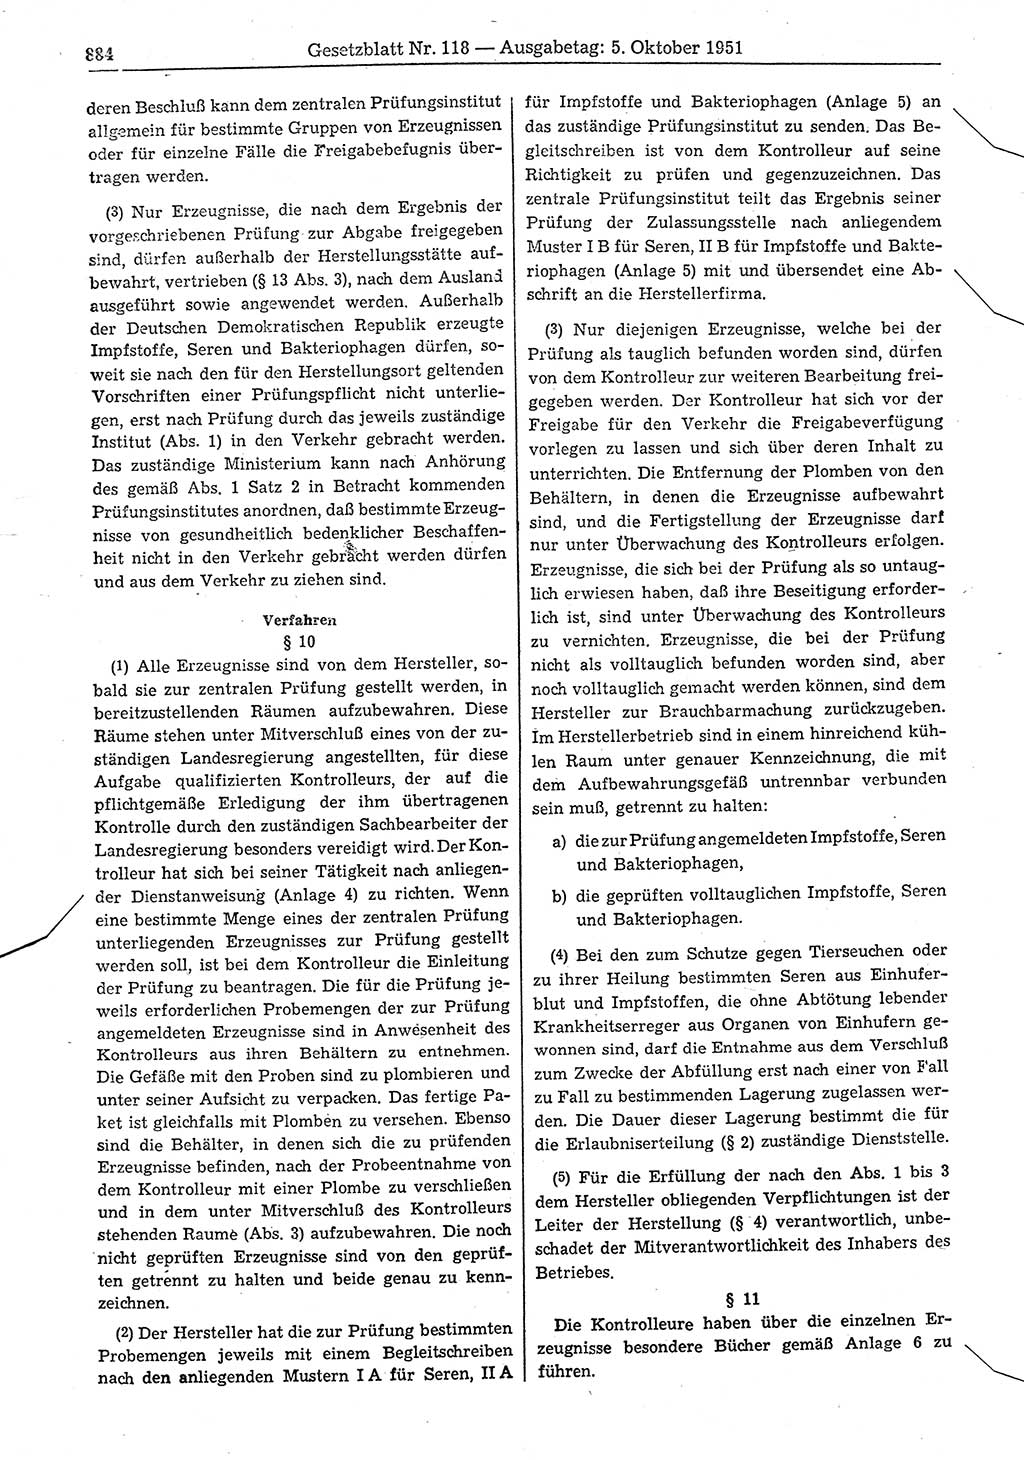 Gesetzblatt (GBl.) der Deutschen Demokratischen Republik (DDR) 1951, Seite 884 (GBl. DDR 1951, S. 884)